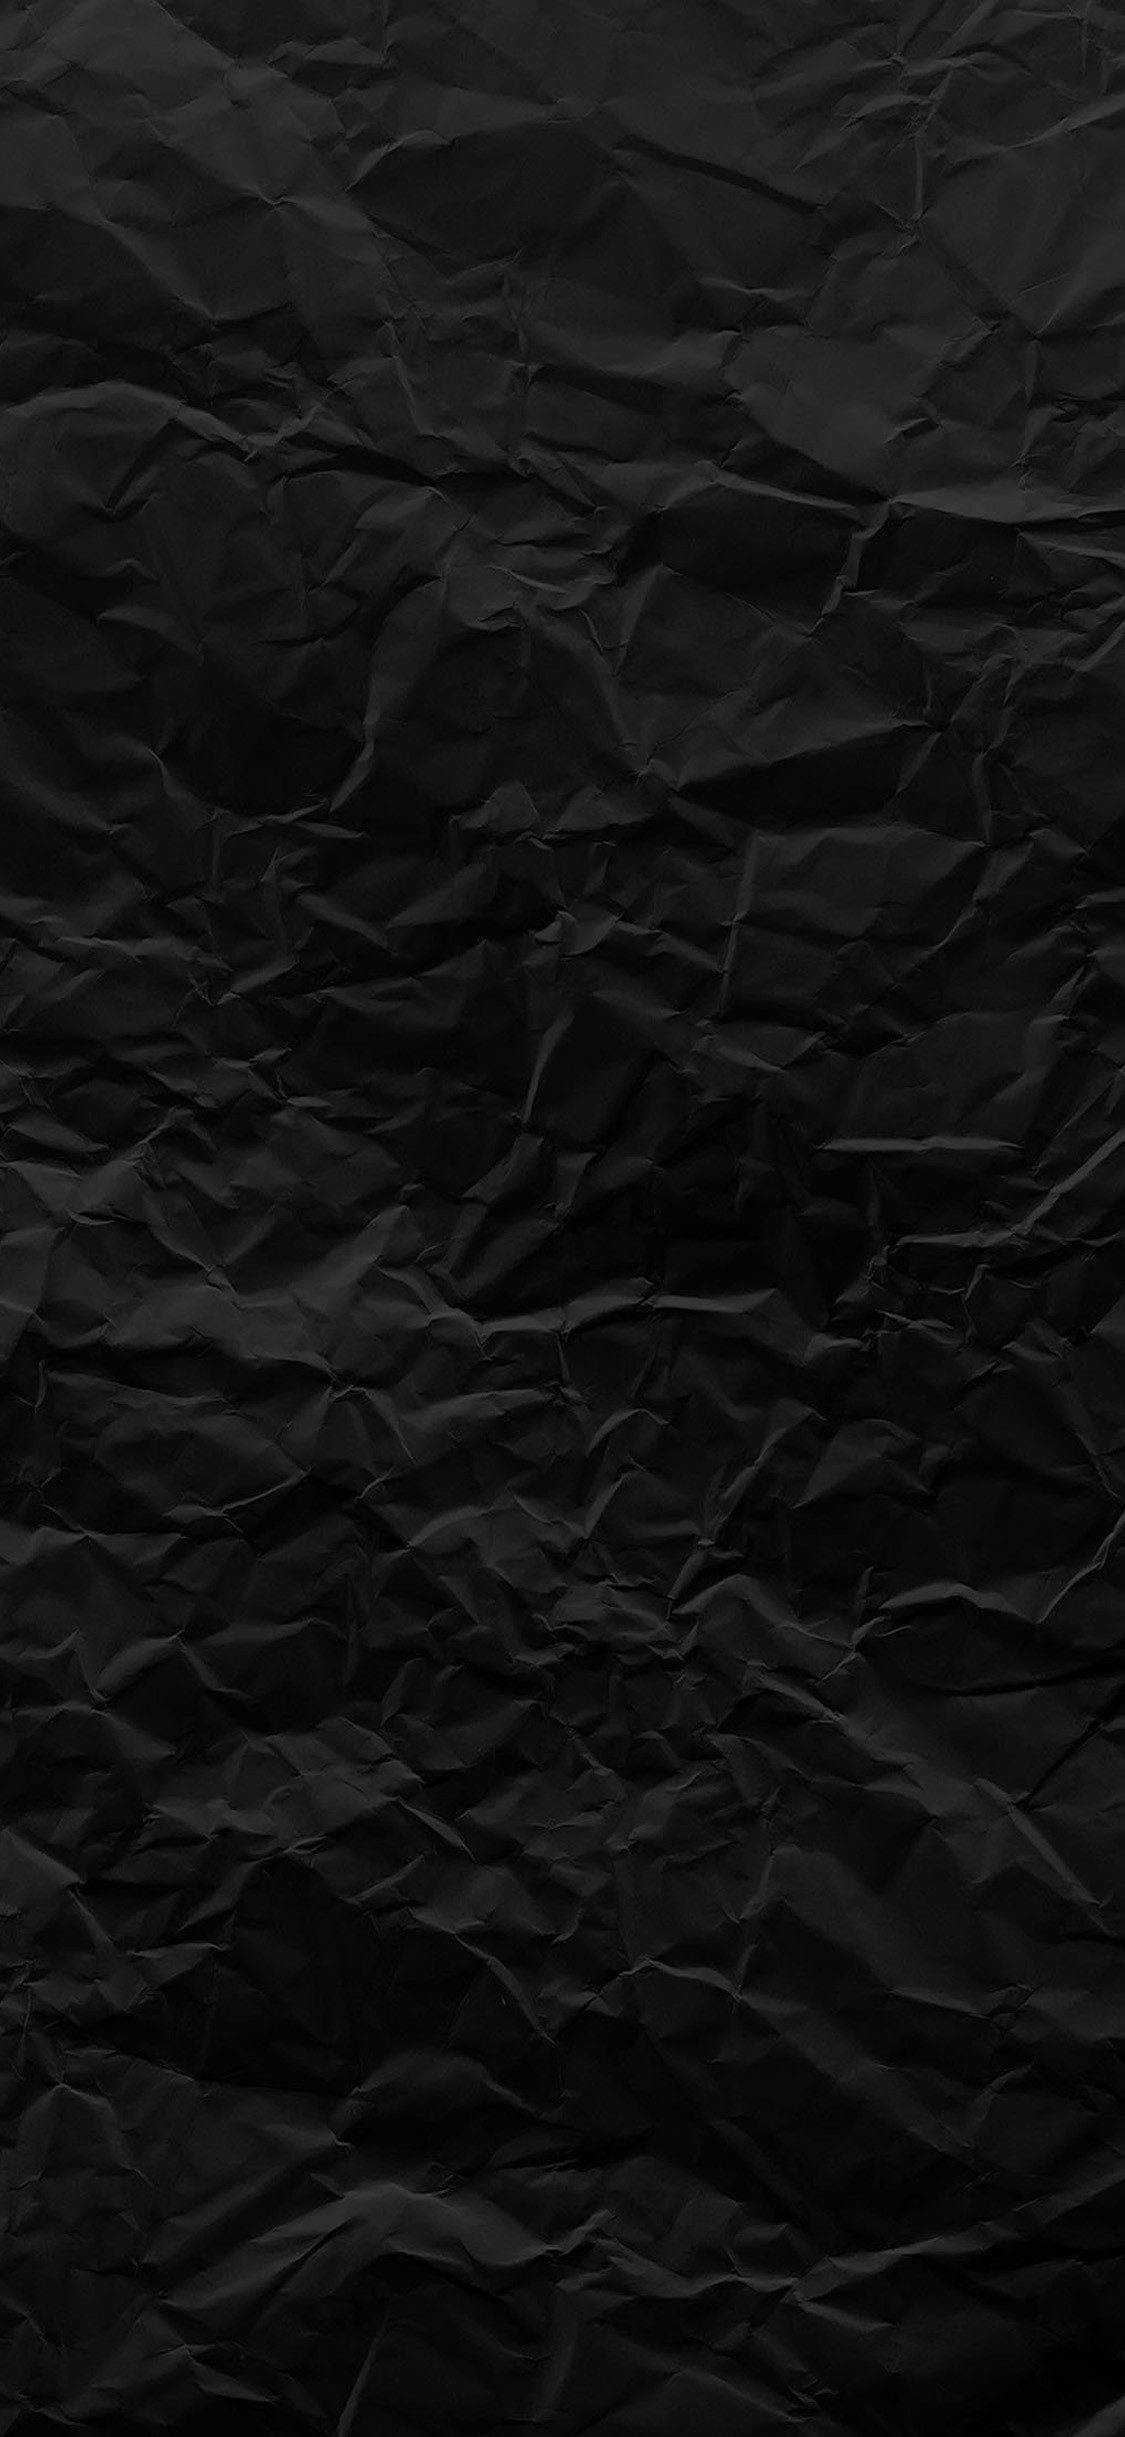 1125x2437 Black paper texture iPhone X Wallpaper